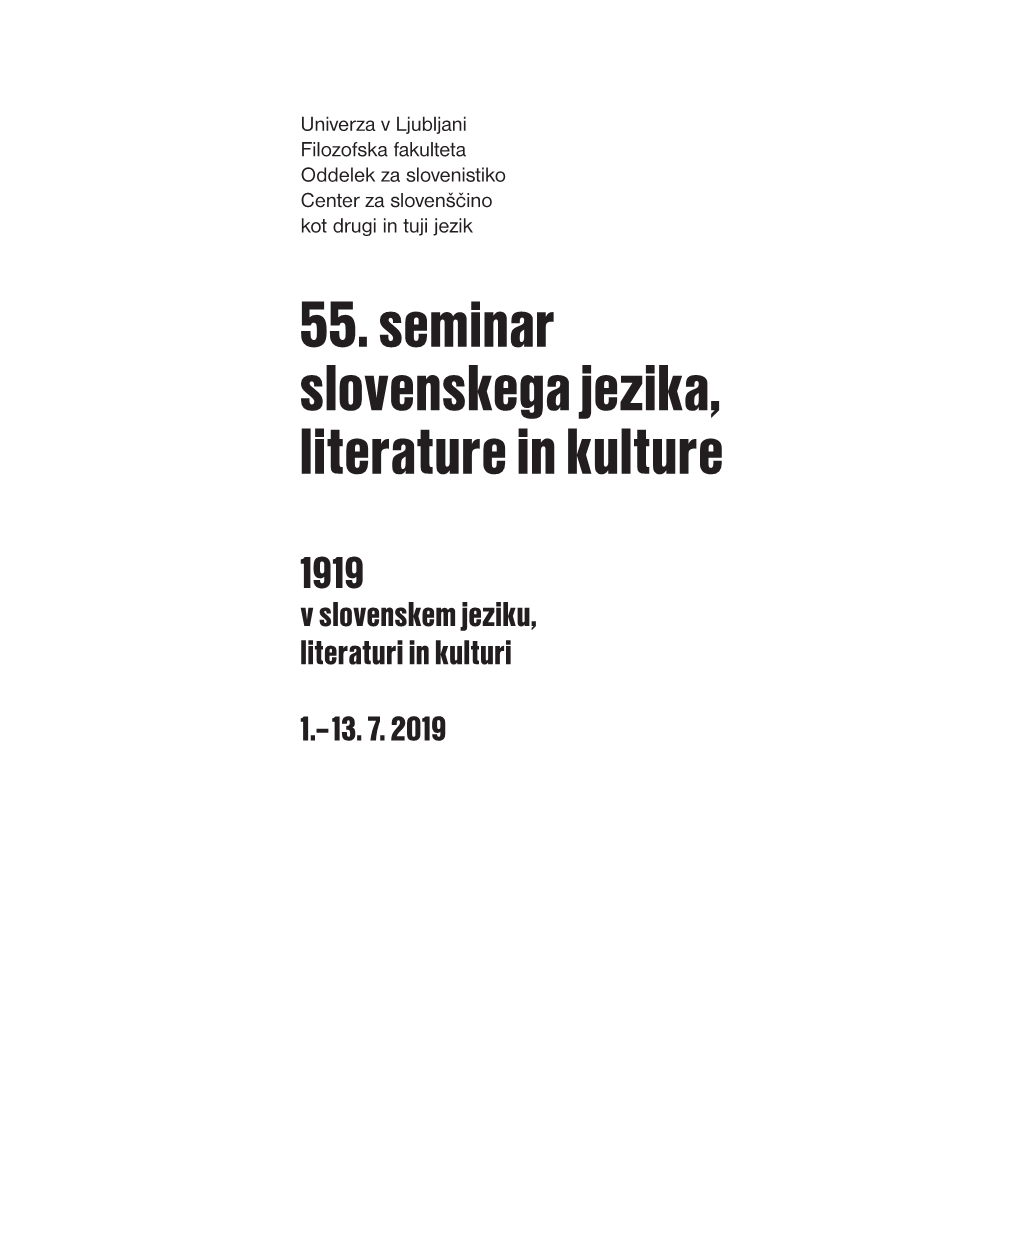 55. Seminar Slovenskega Jezika, Literature in Kulture